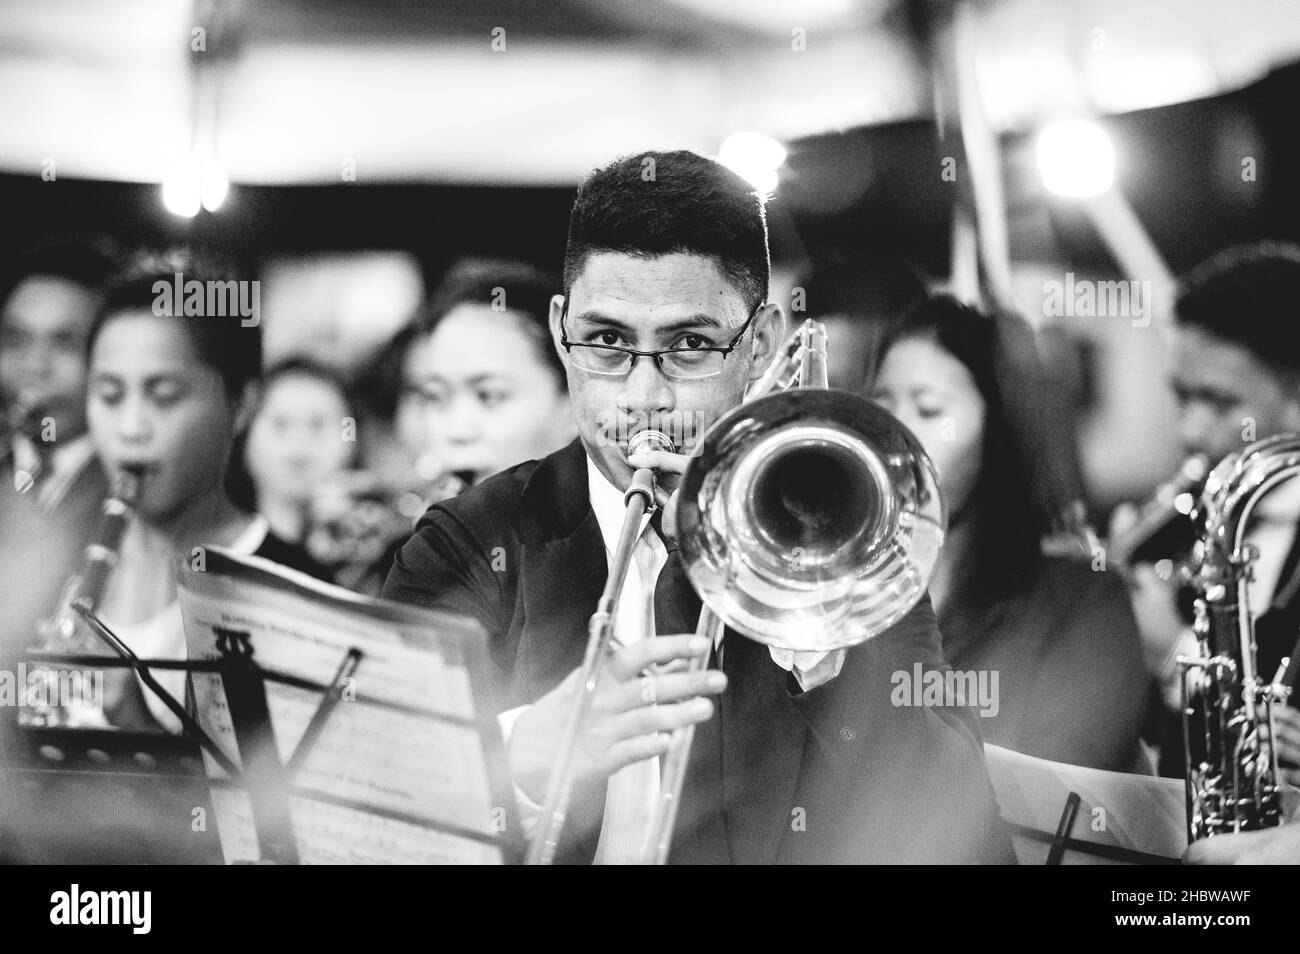 LA CARLOTA CITY, FILIPINAS - 01 de marzo de 2019: Un disparo en escala de grises de la orquesta tocando en el encuentro religioso evangelístico en las islas filipinas Foto de stock